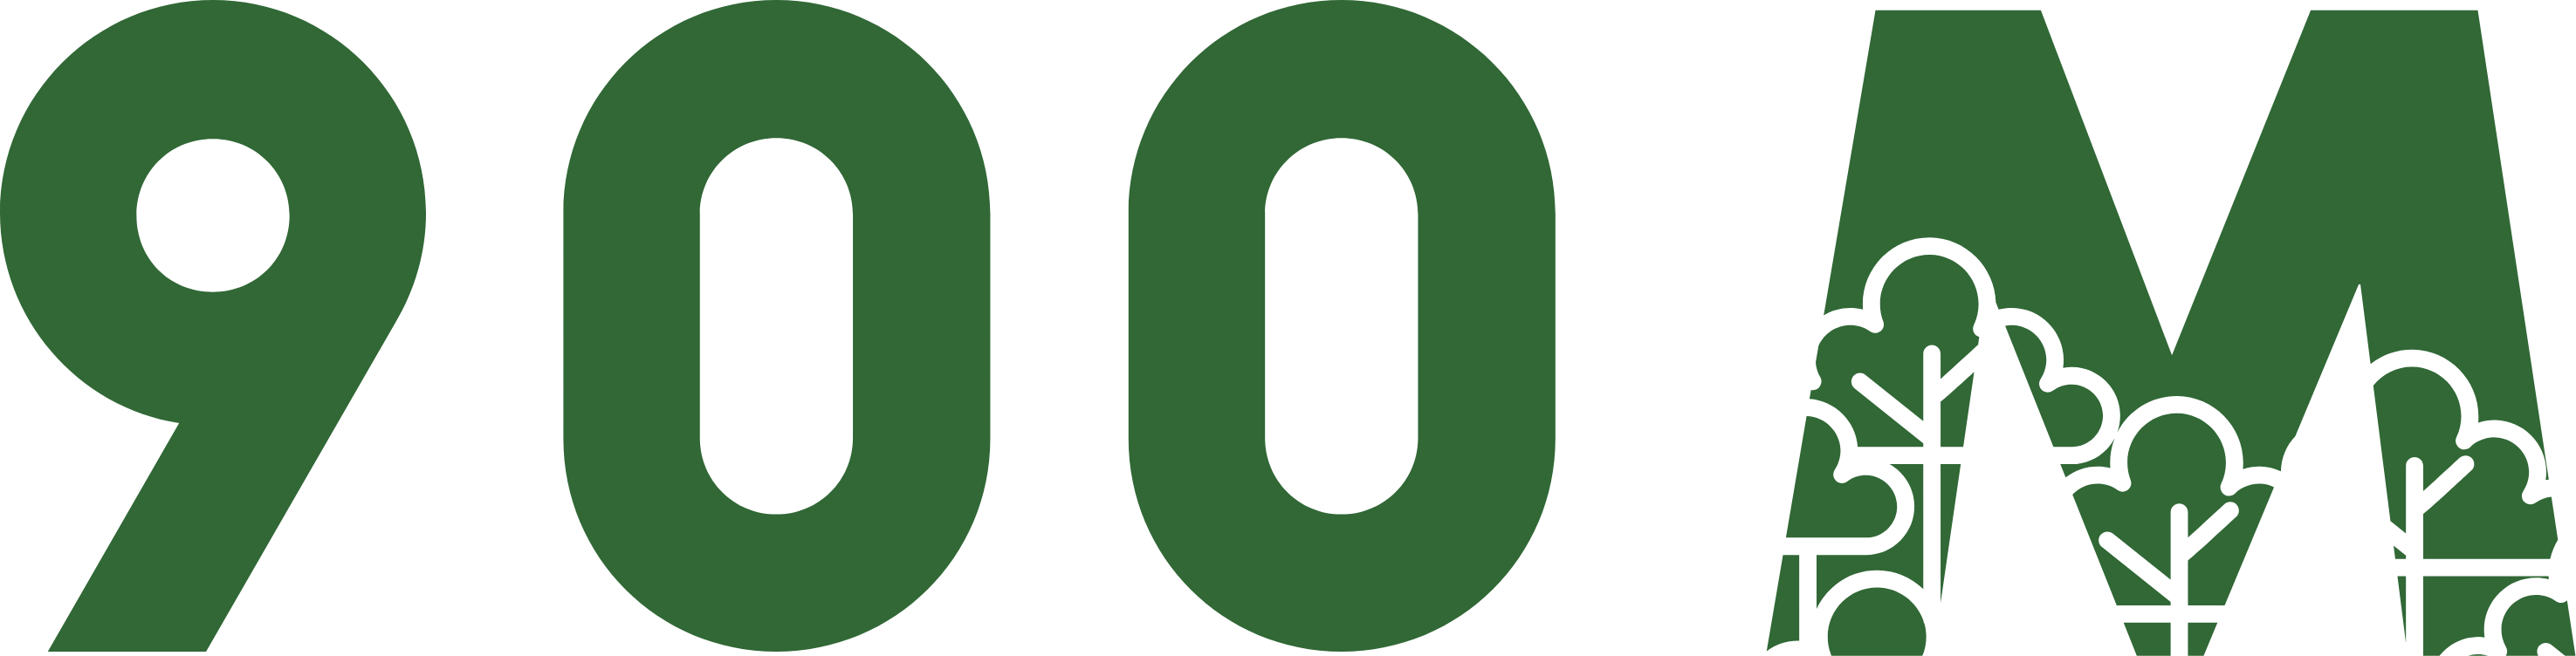 900M logo